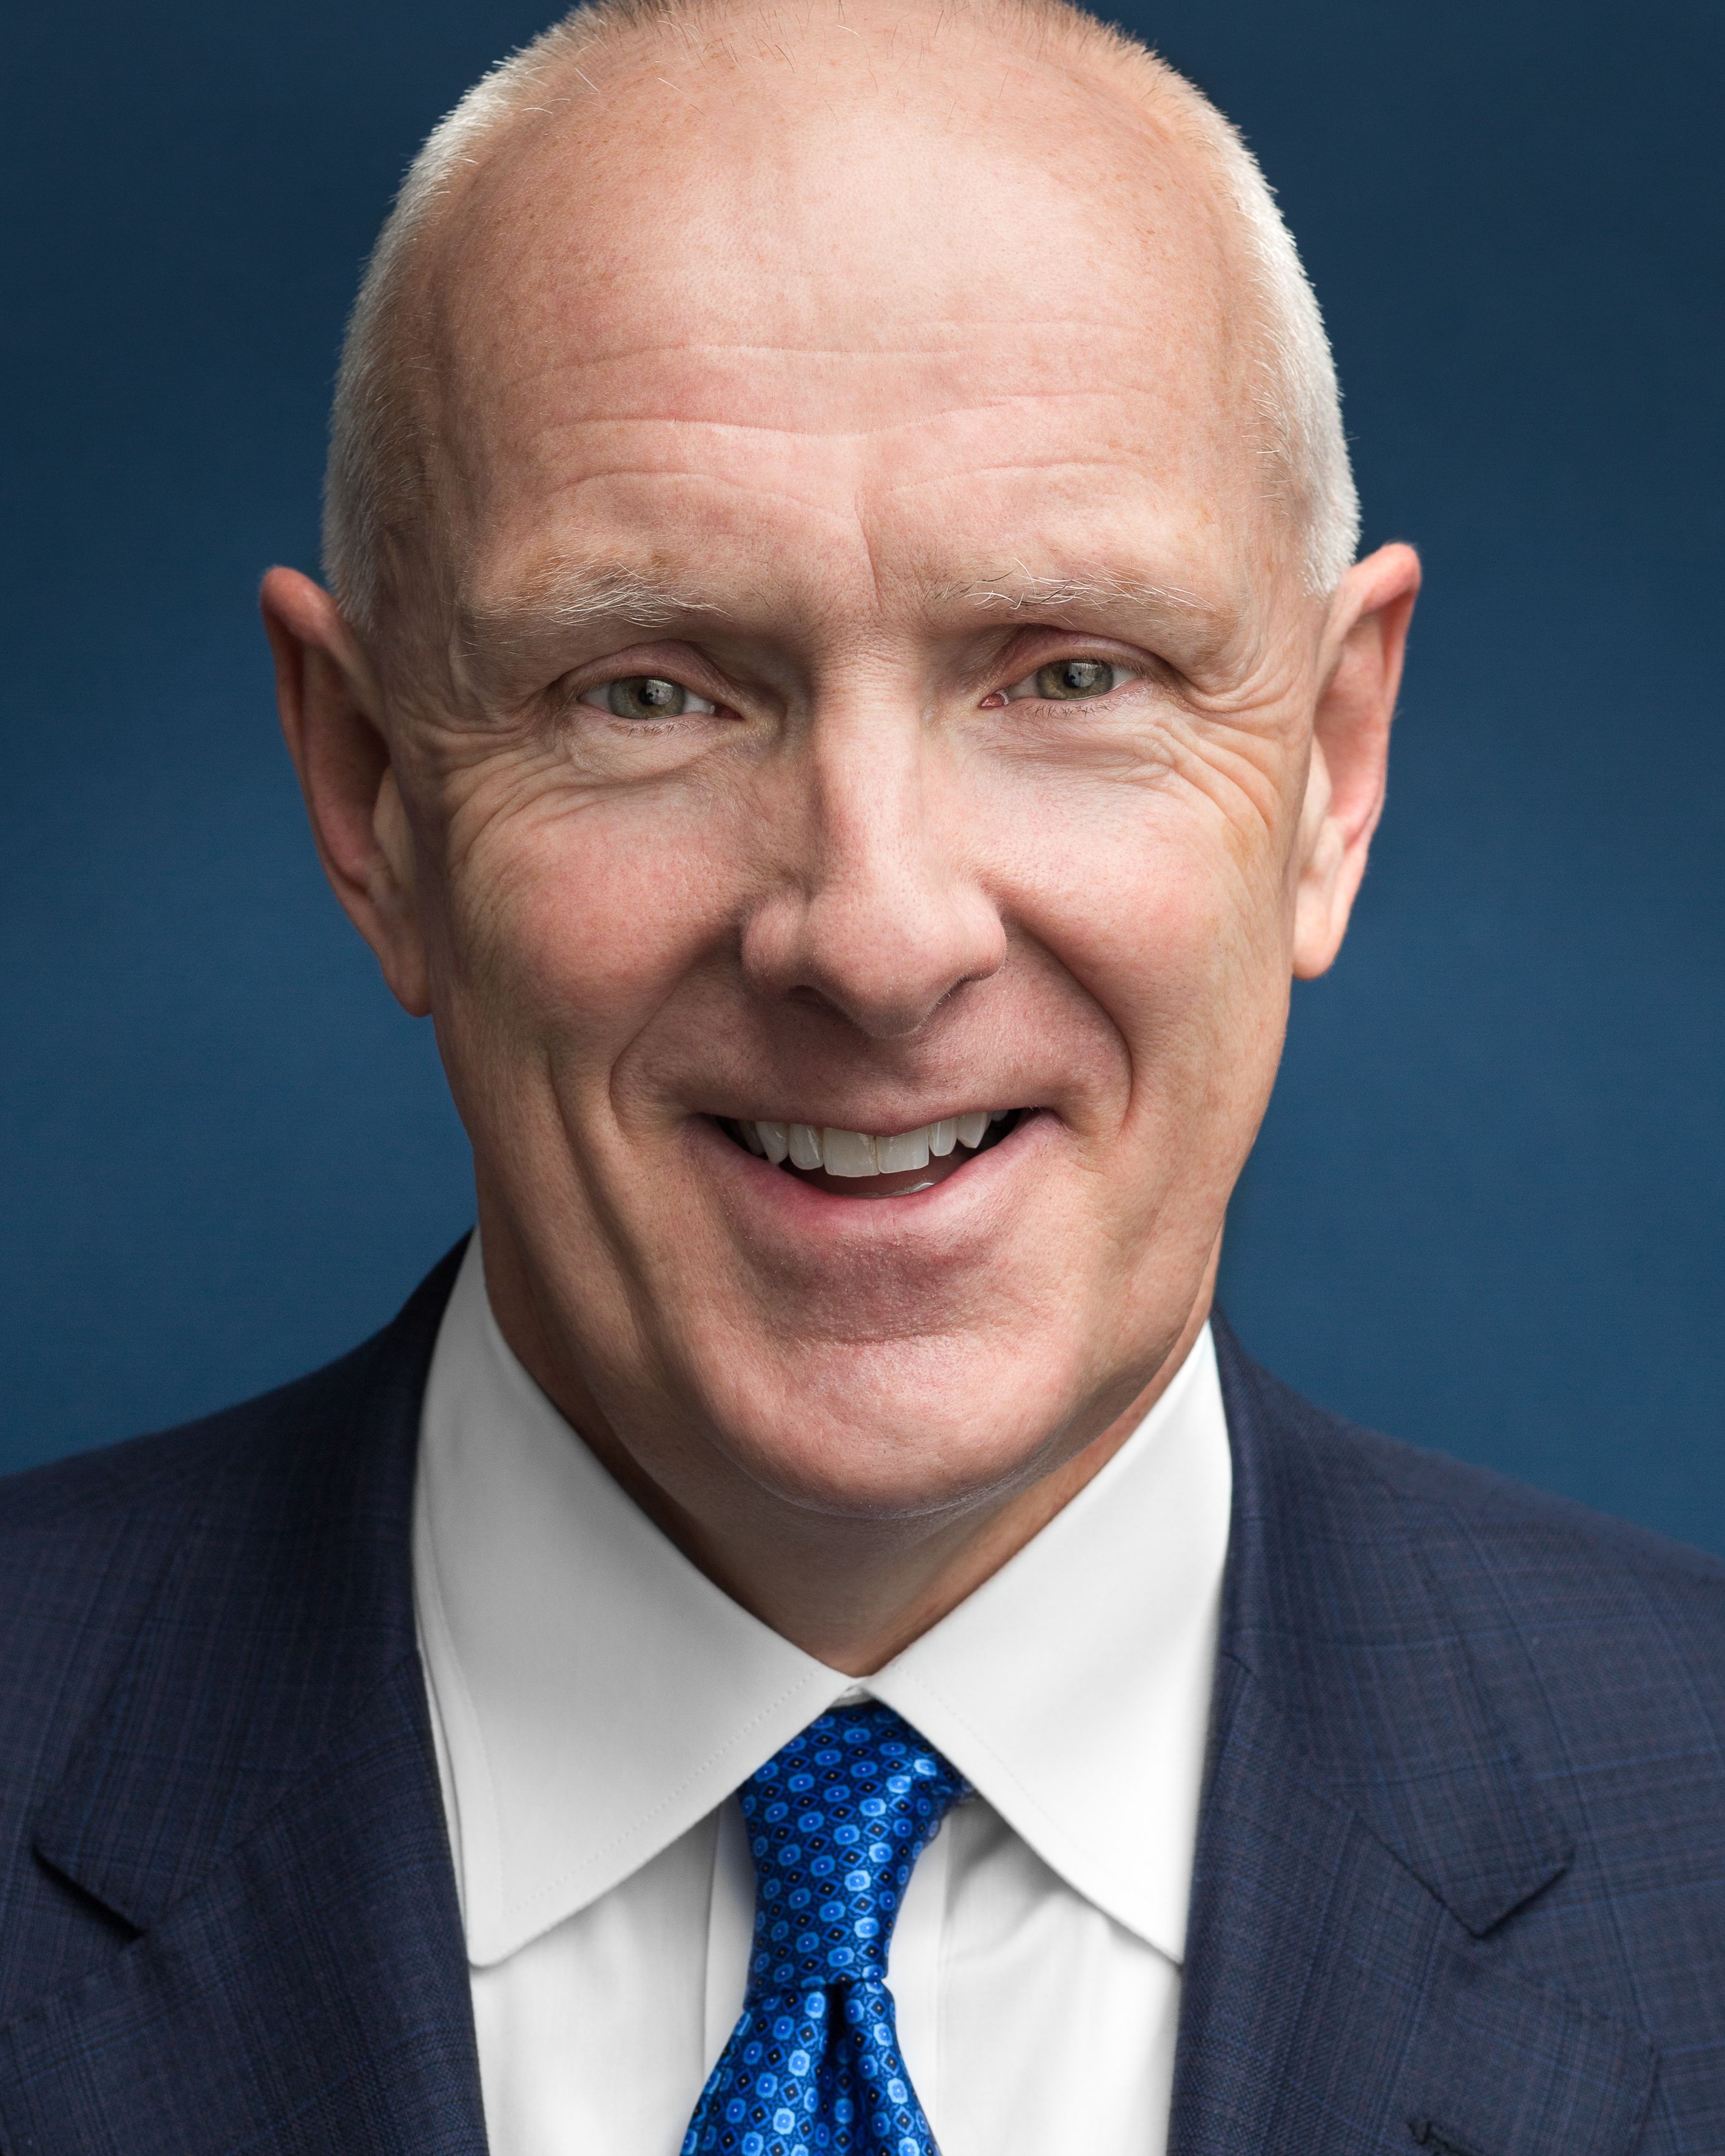 Warner Thomas, president and CEO of Ochsner Health